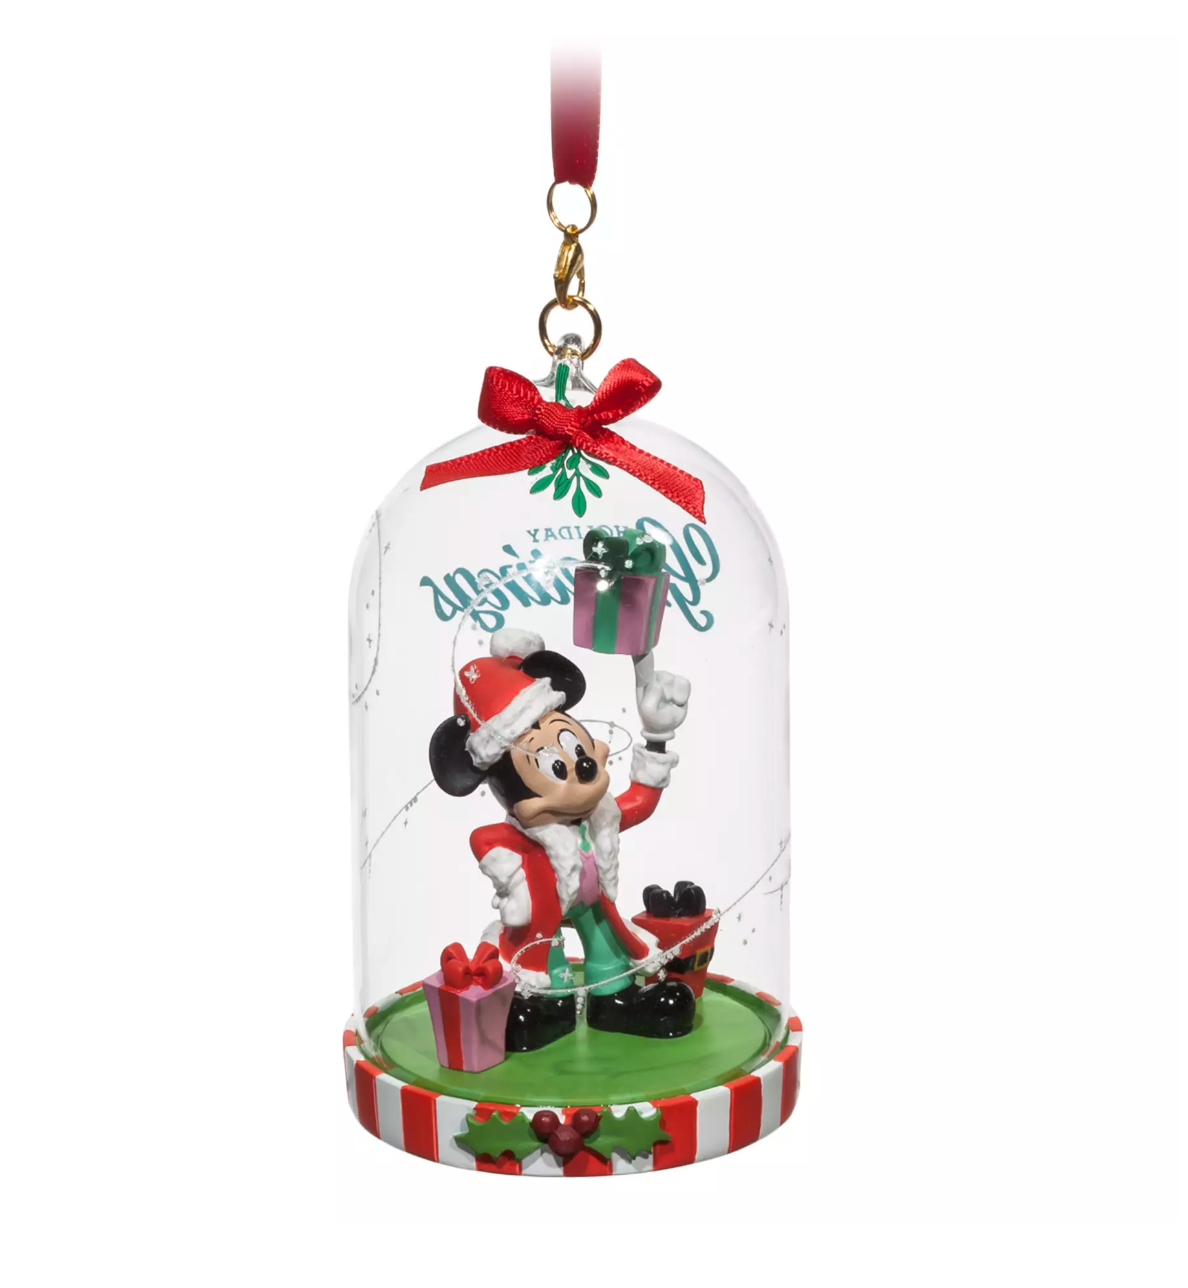 Disney Parks Greetings Santa Mickey Glass Dome Sketchbook Christmas Ornament New